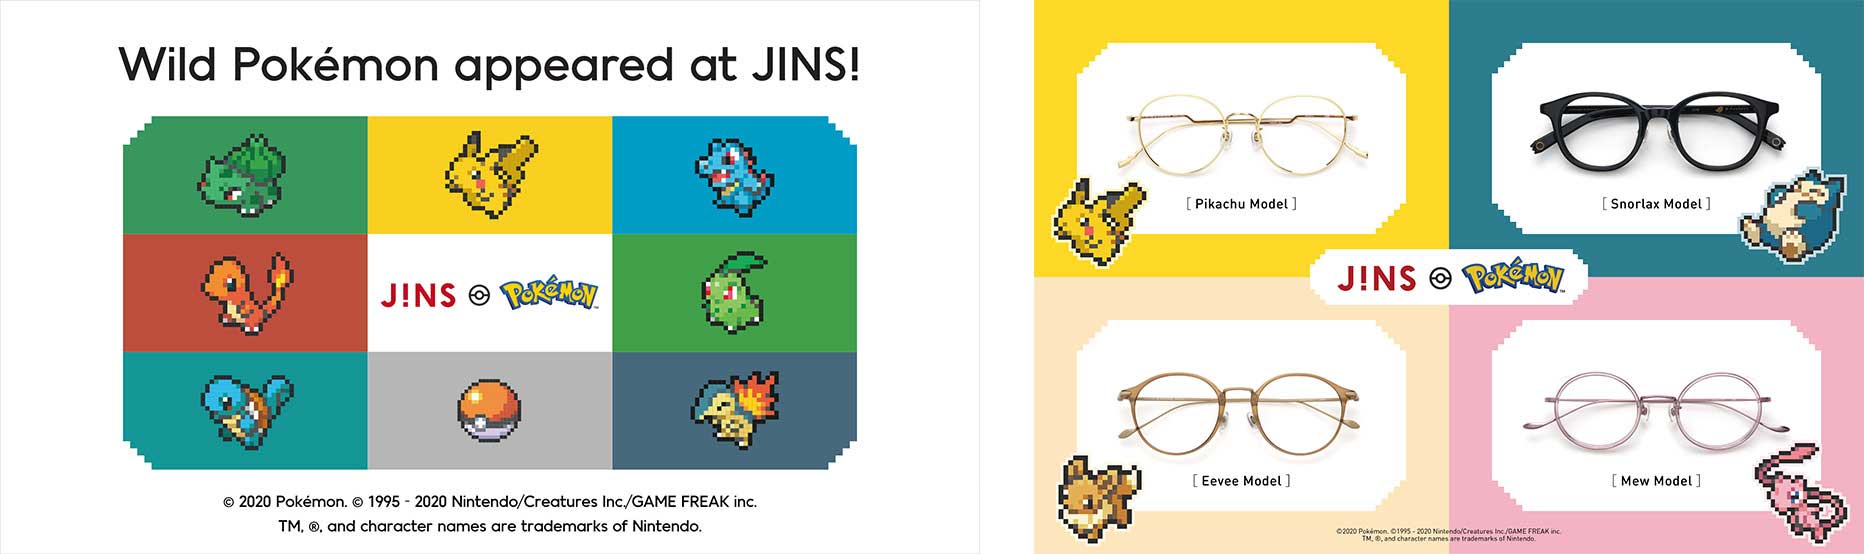 Jins glasses pokemon